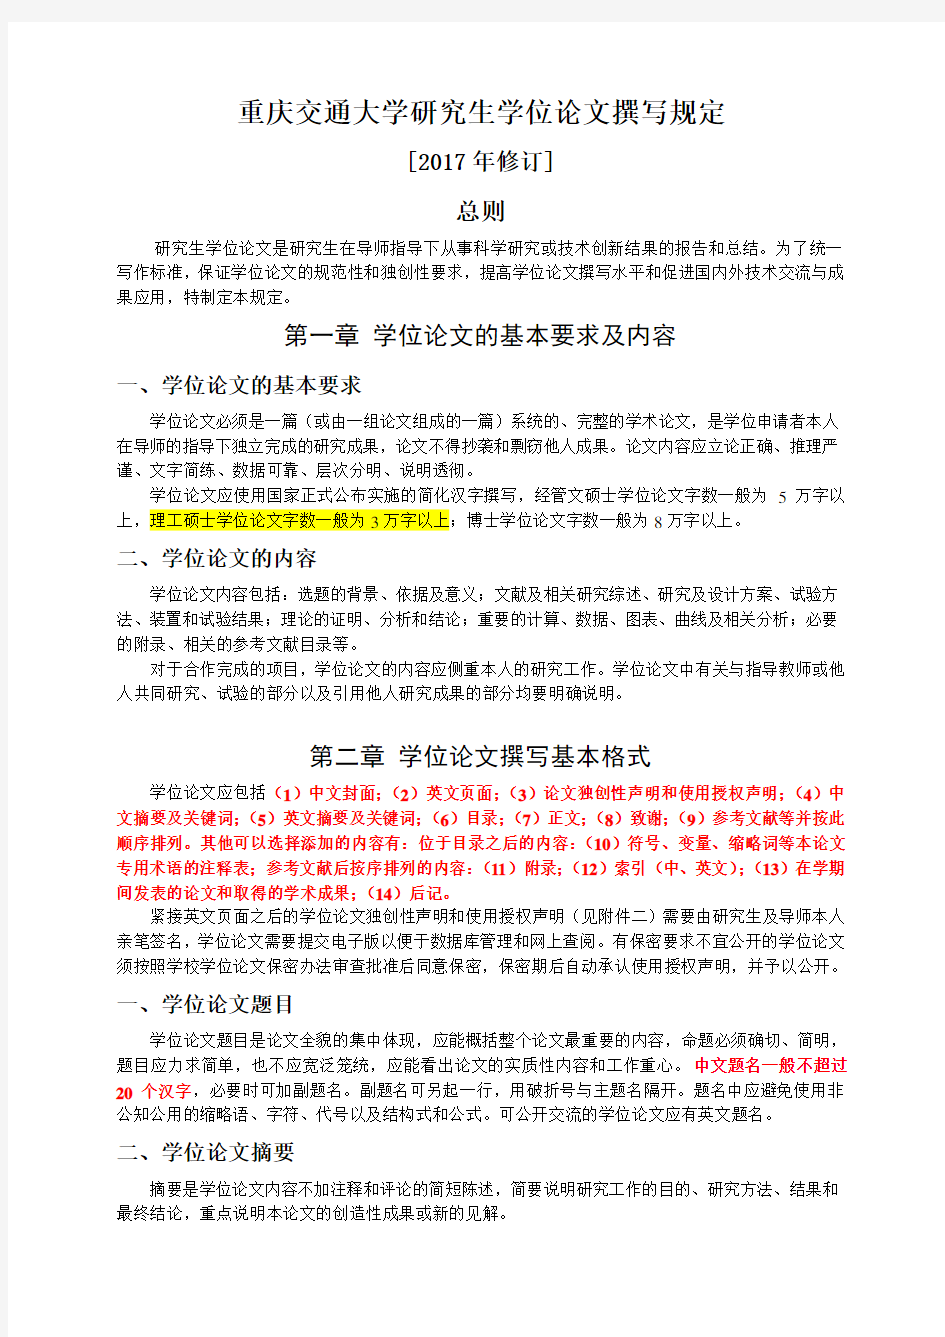 最新版 重庆交通大学研究生学位论文撰写规定